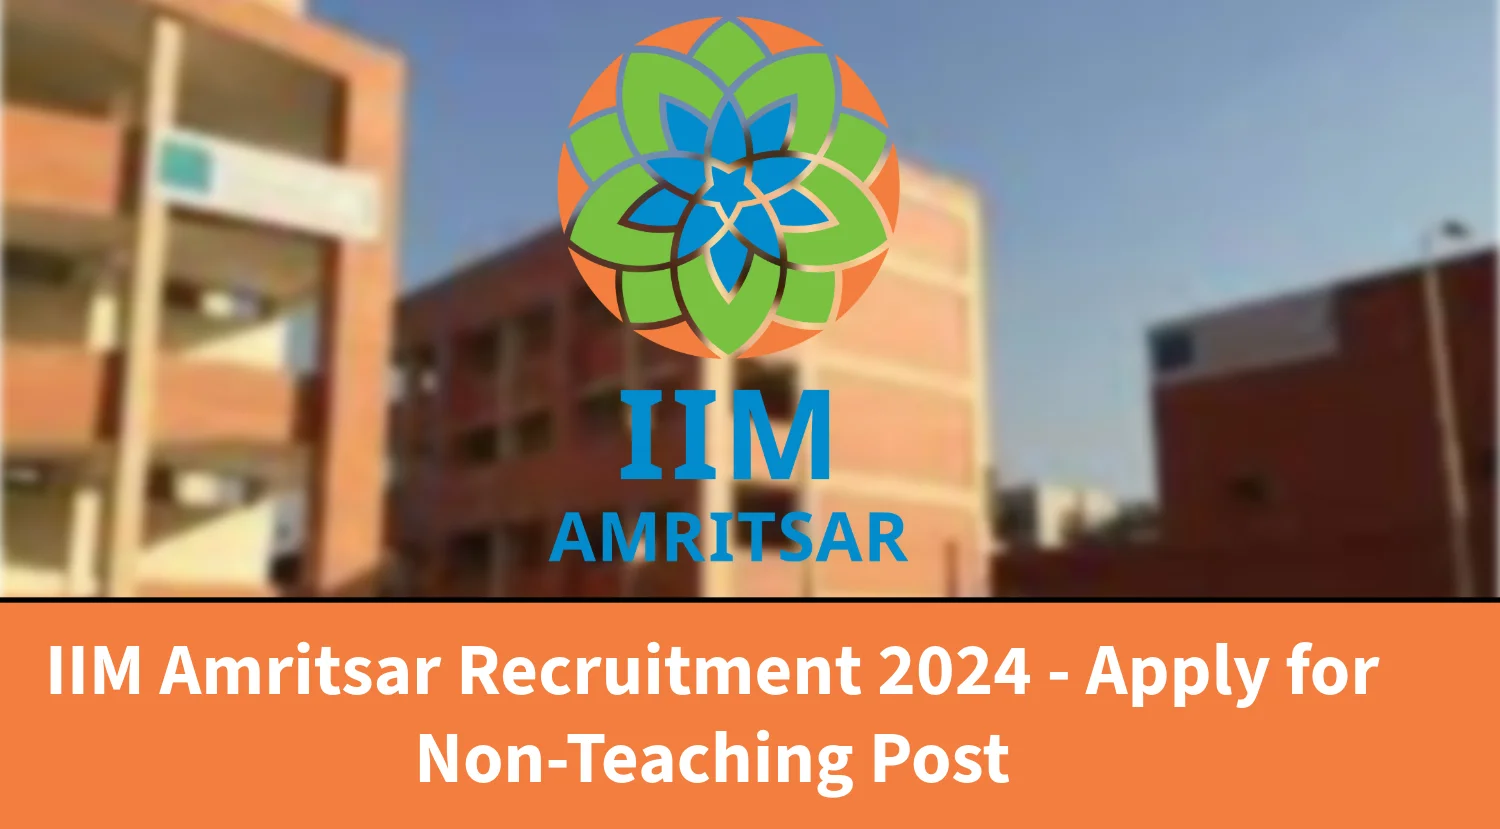 IIM Amritsar Recruitment 2024 - Apply for Non-Teaching Post